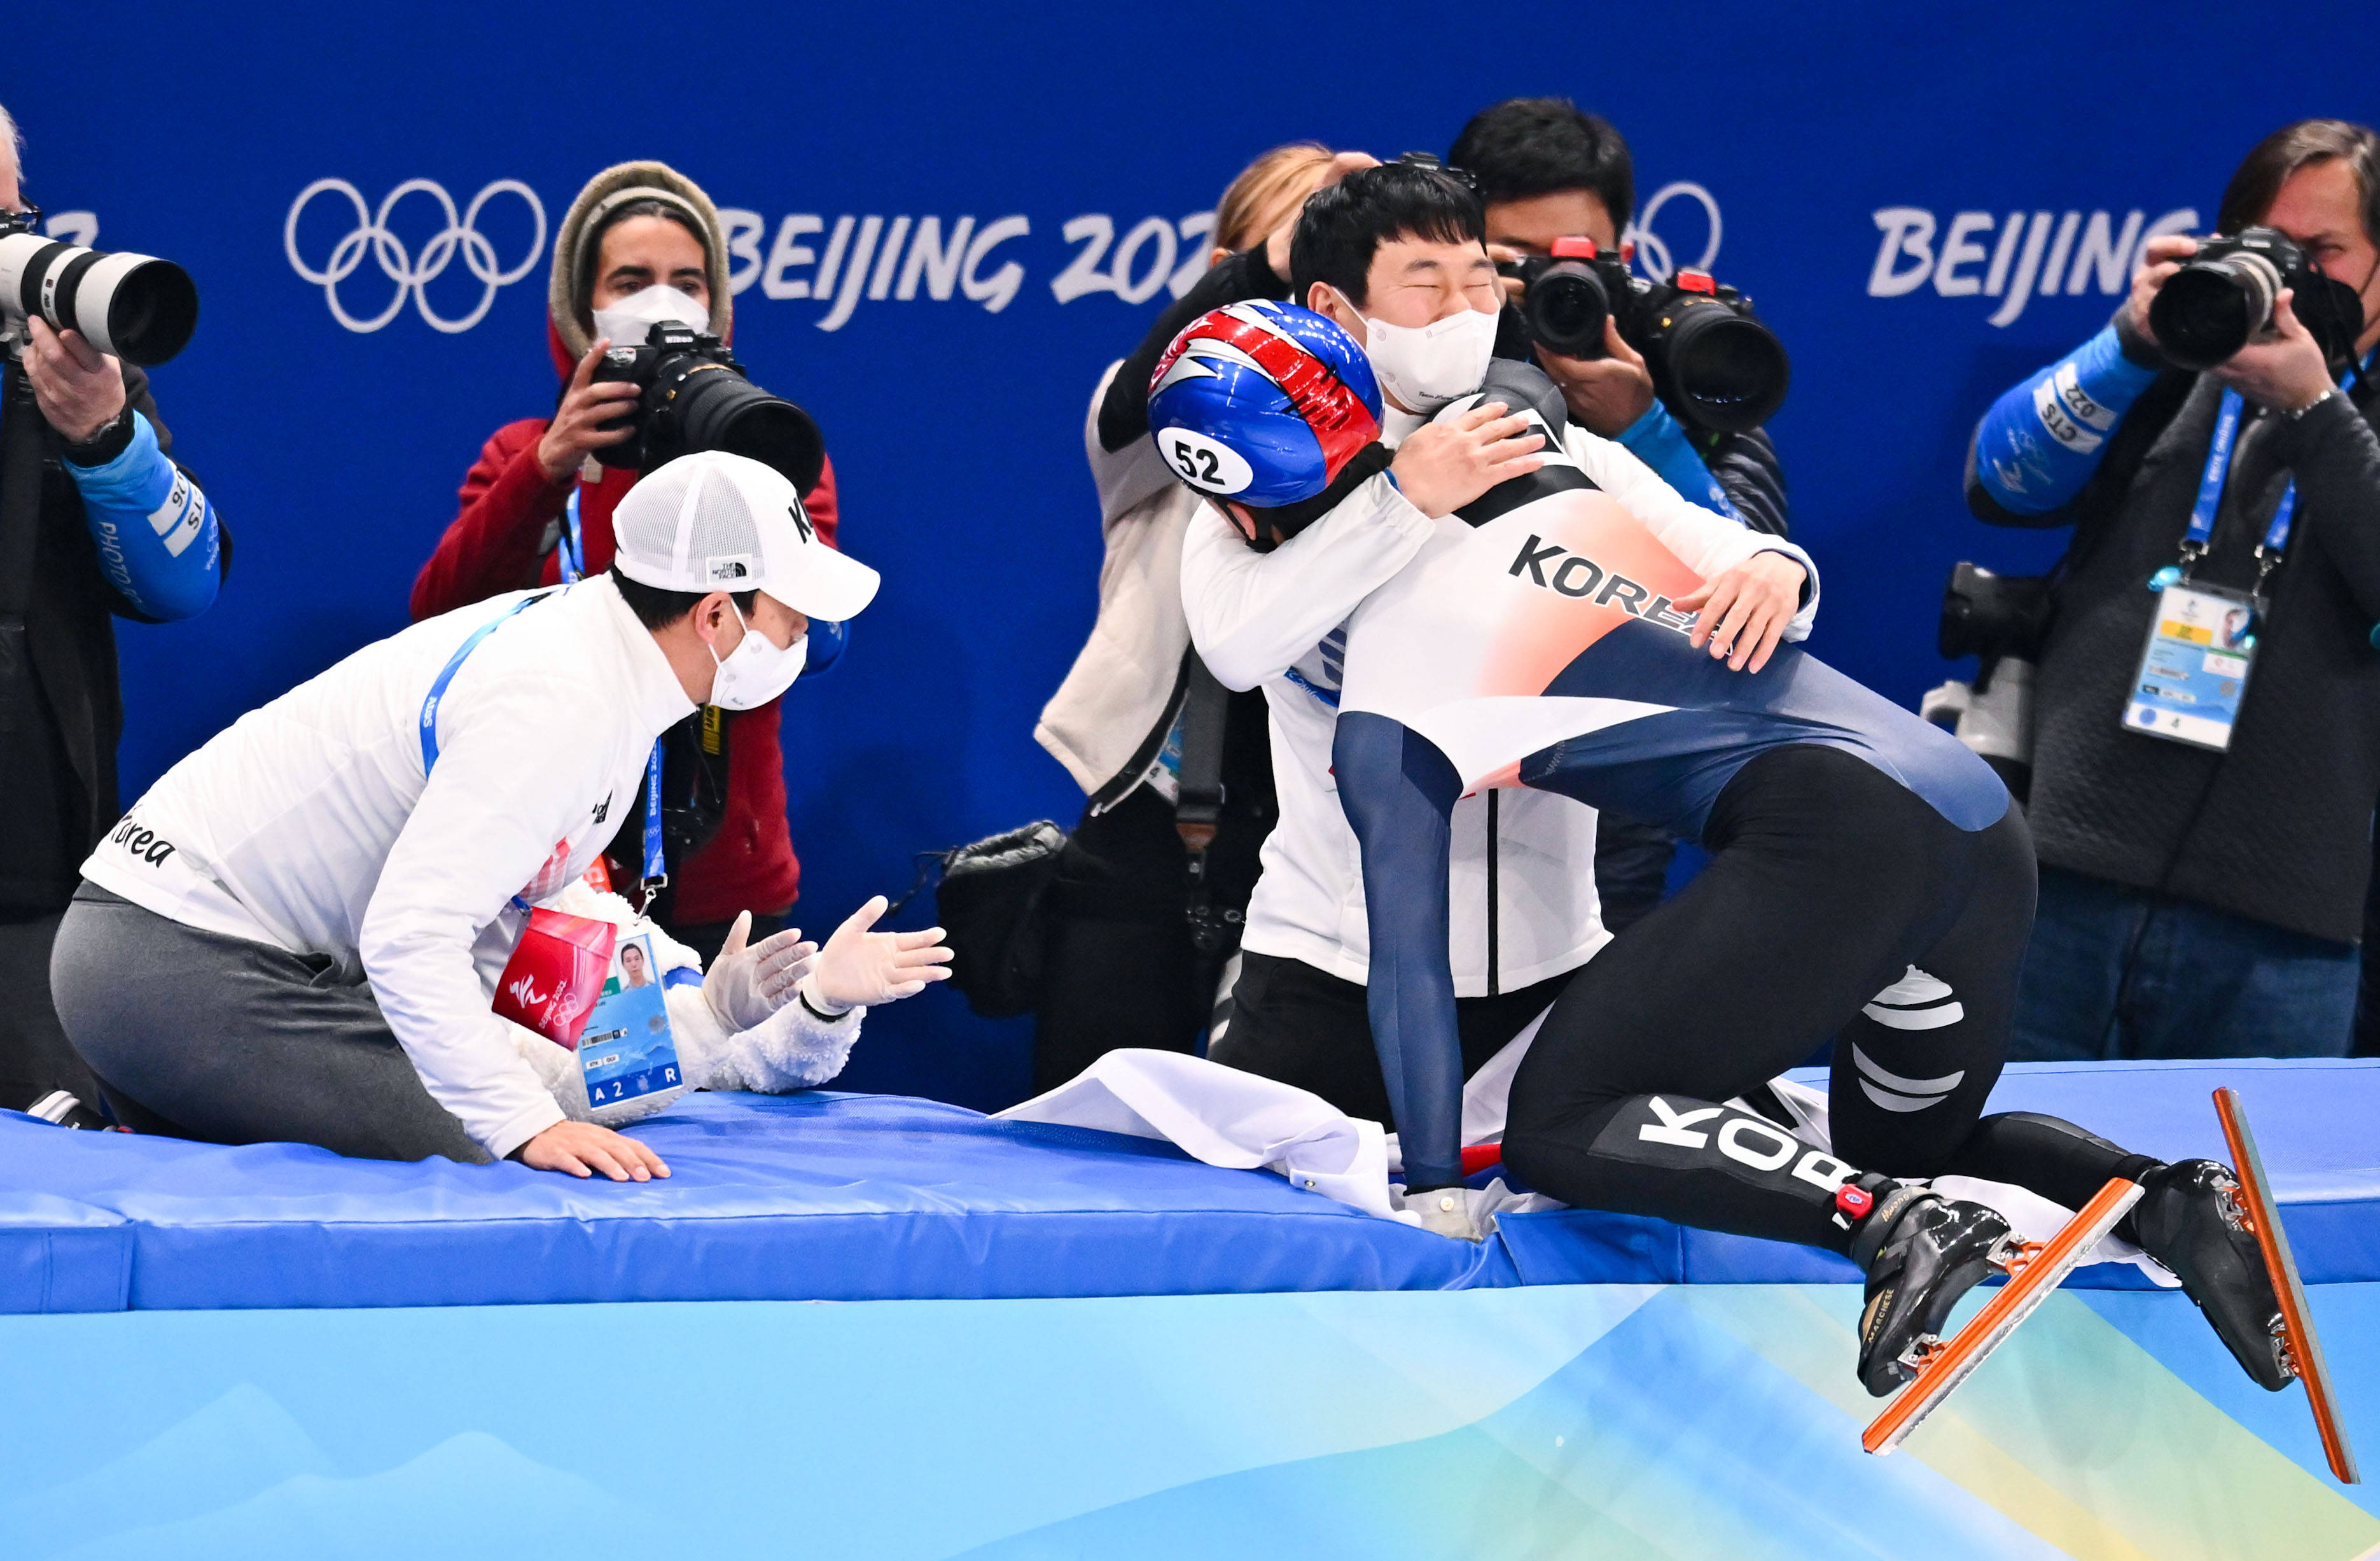 短道速滑男子1500米决赛韩国选手黄大宪夺冠